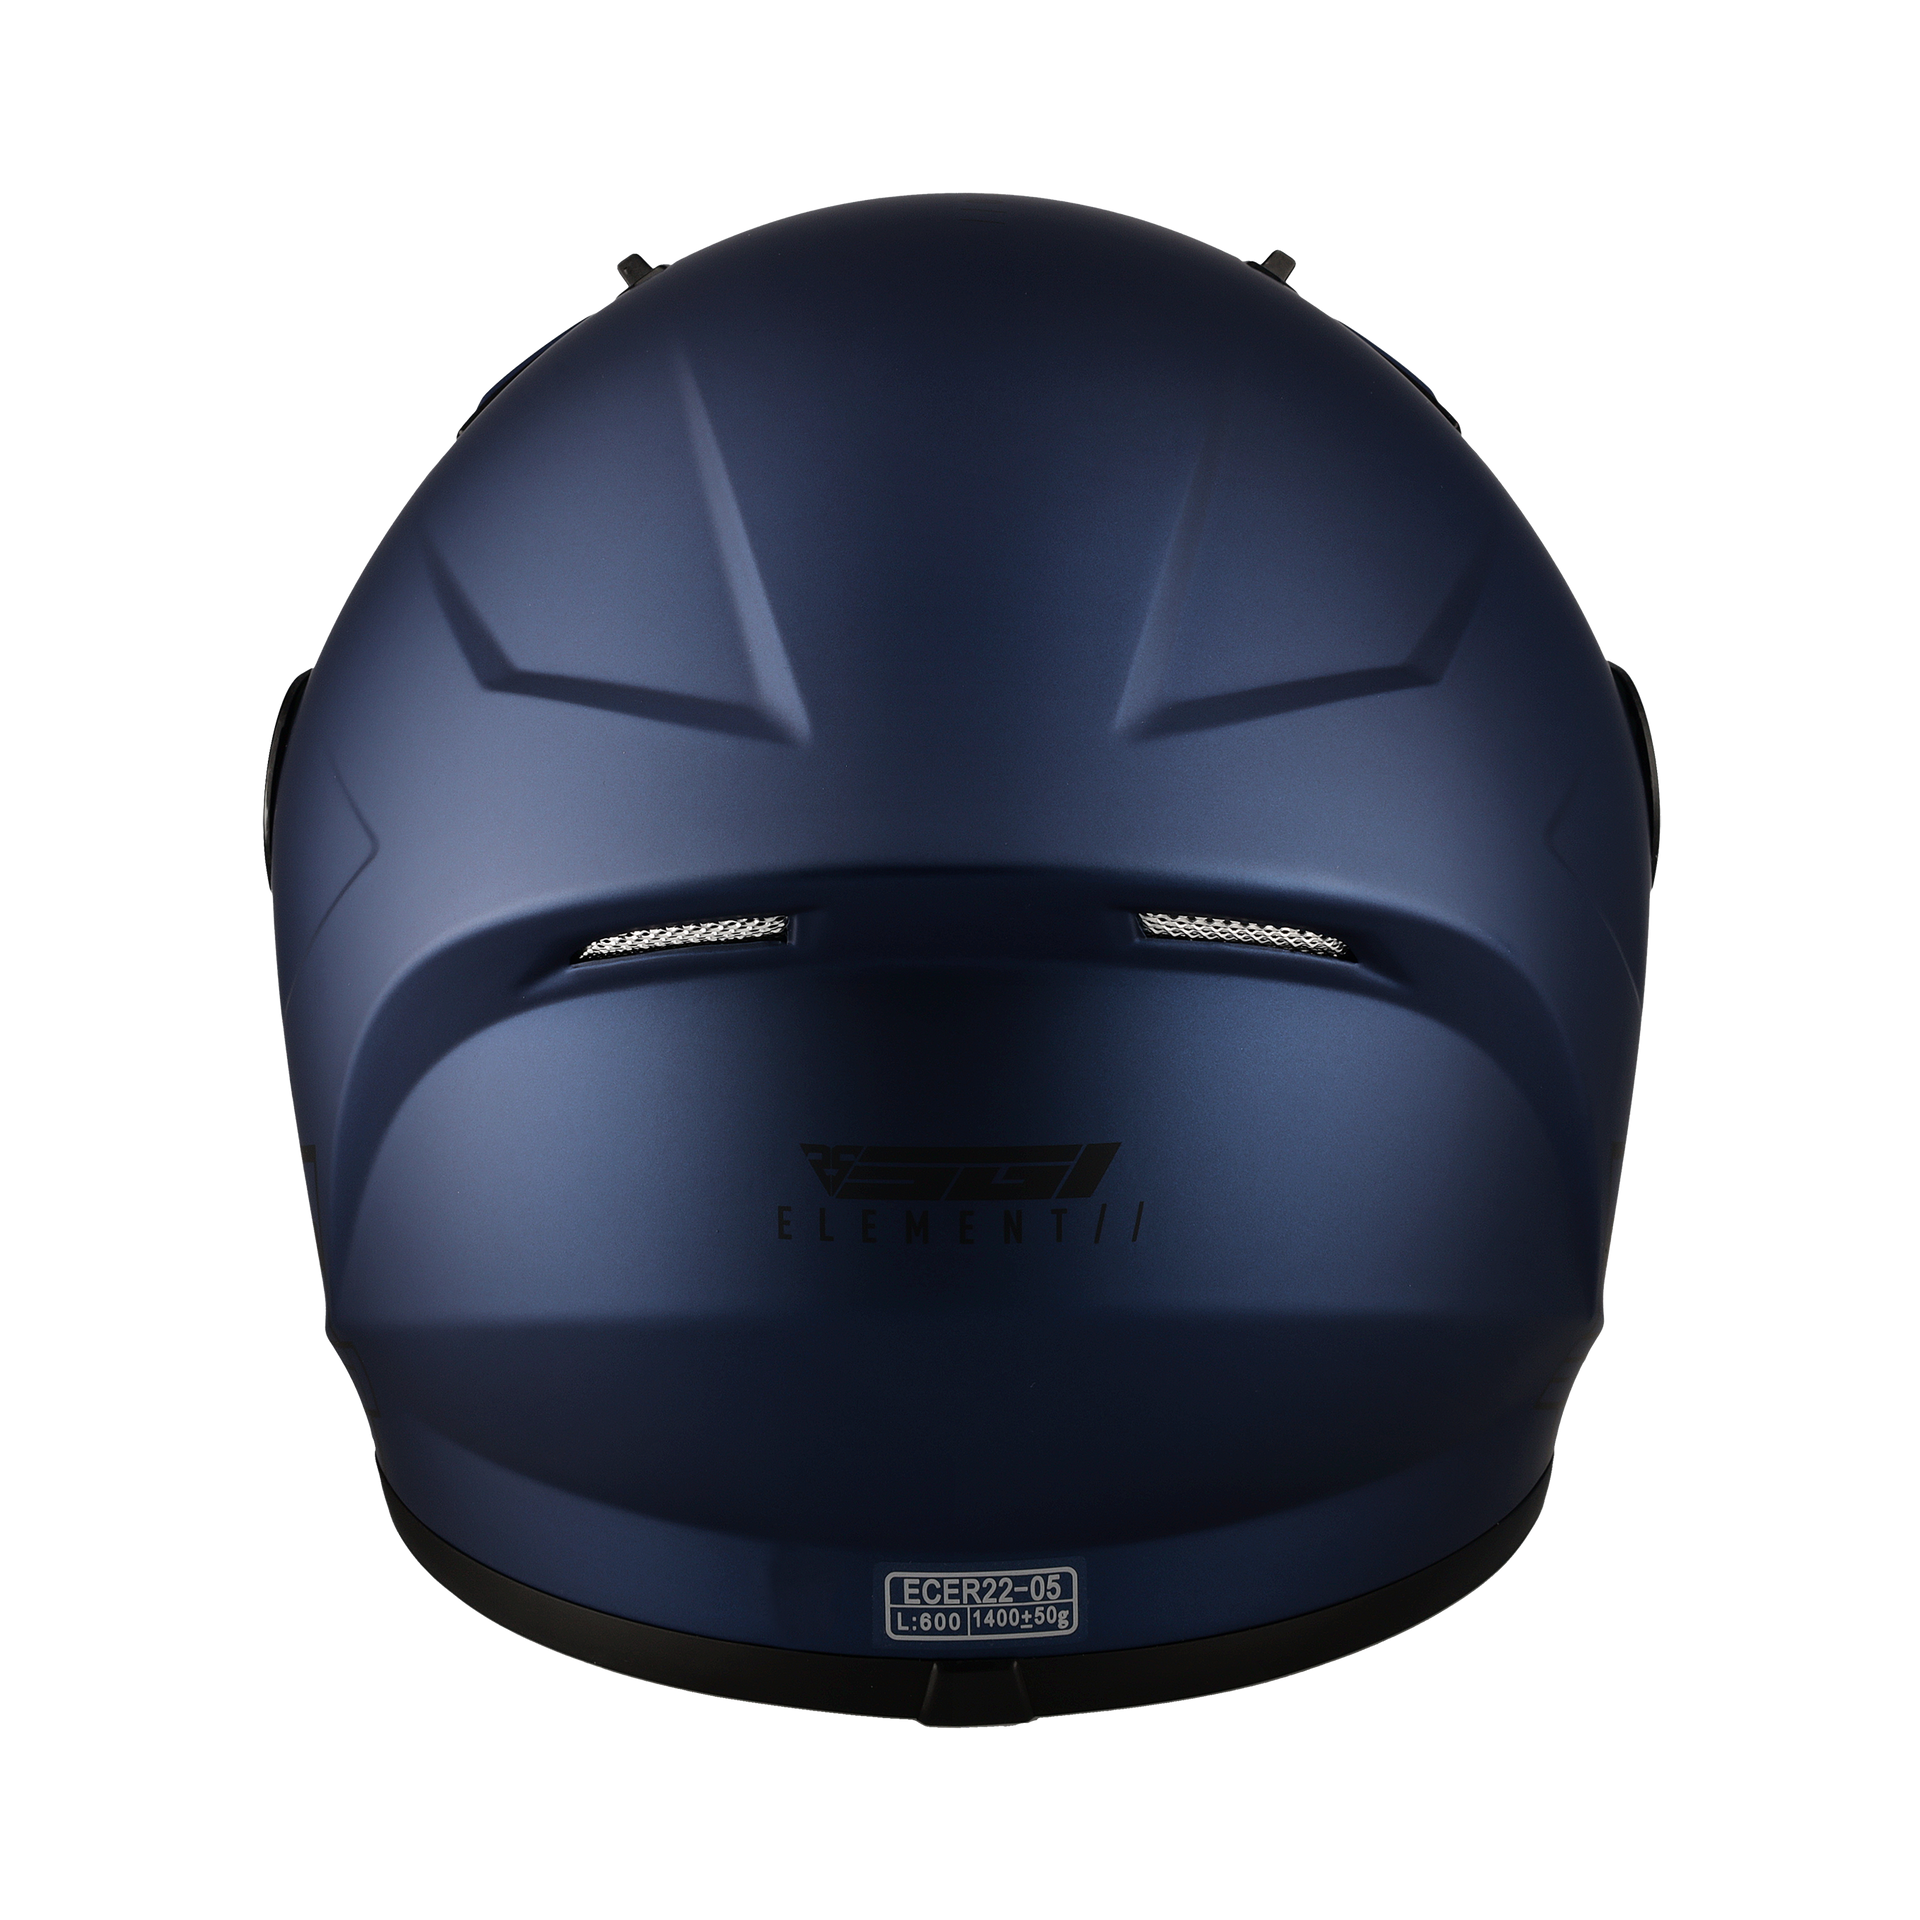 SGI - Tyro Helmet